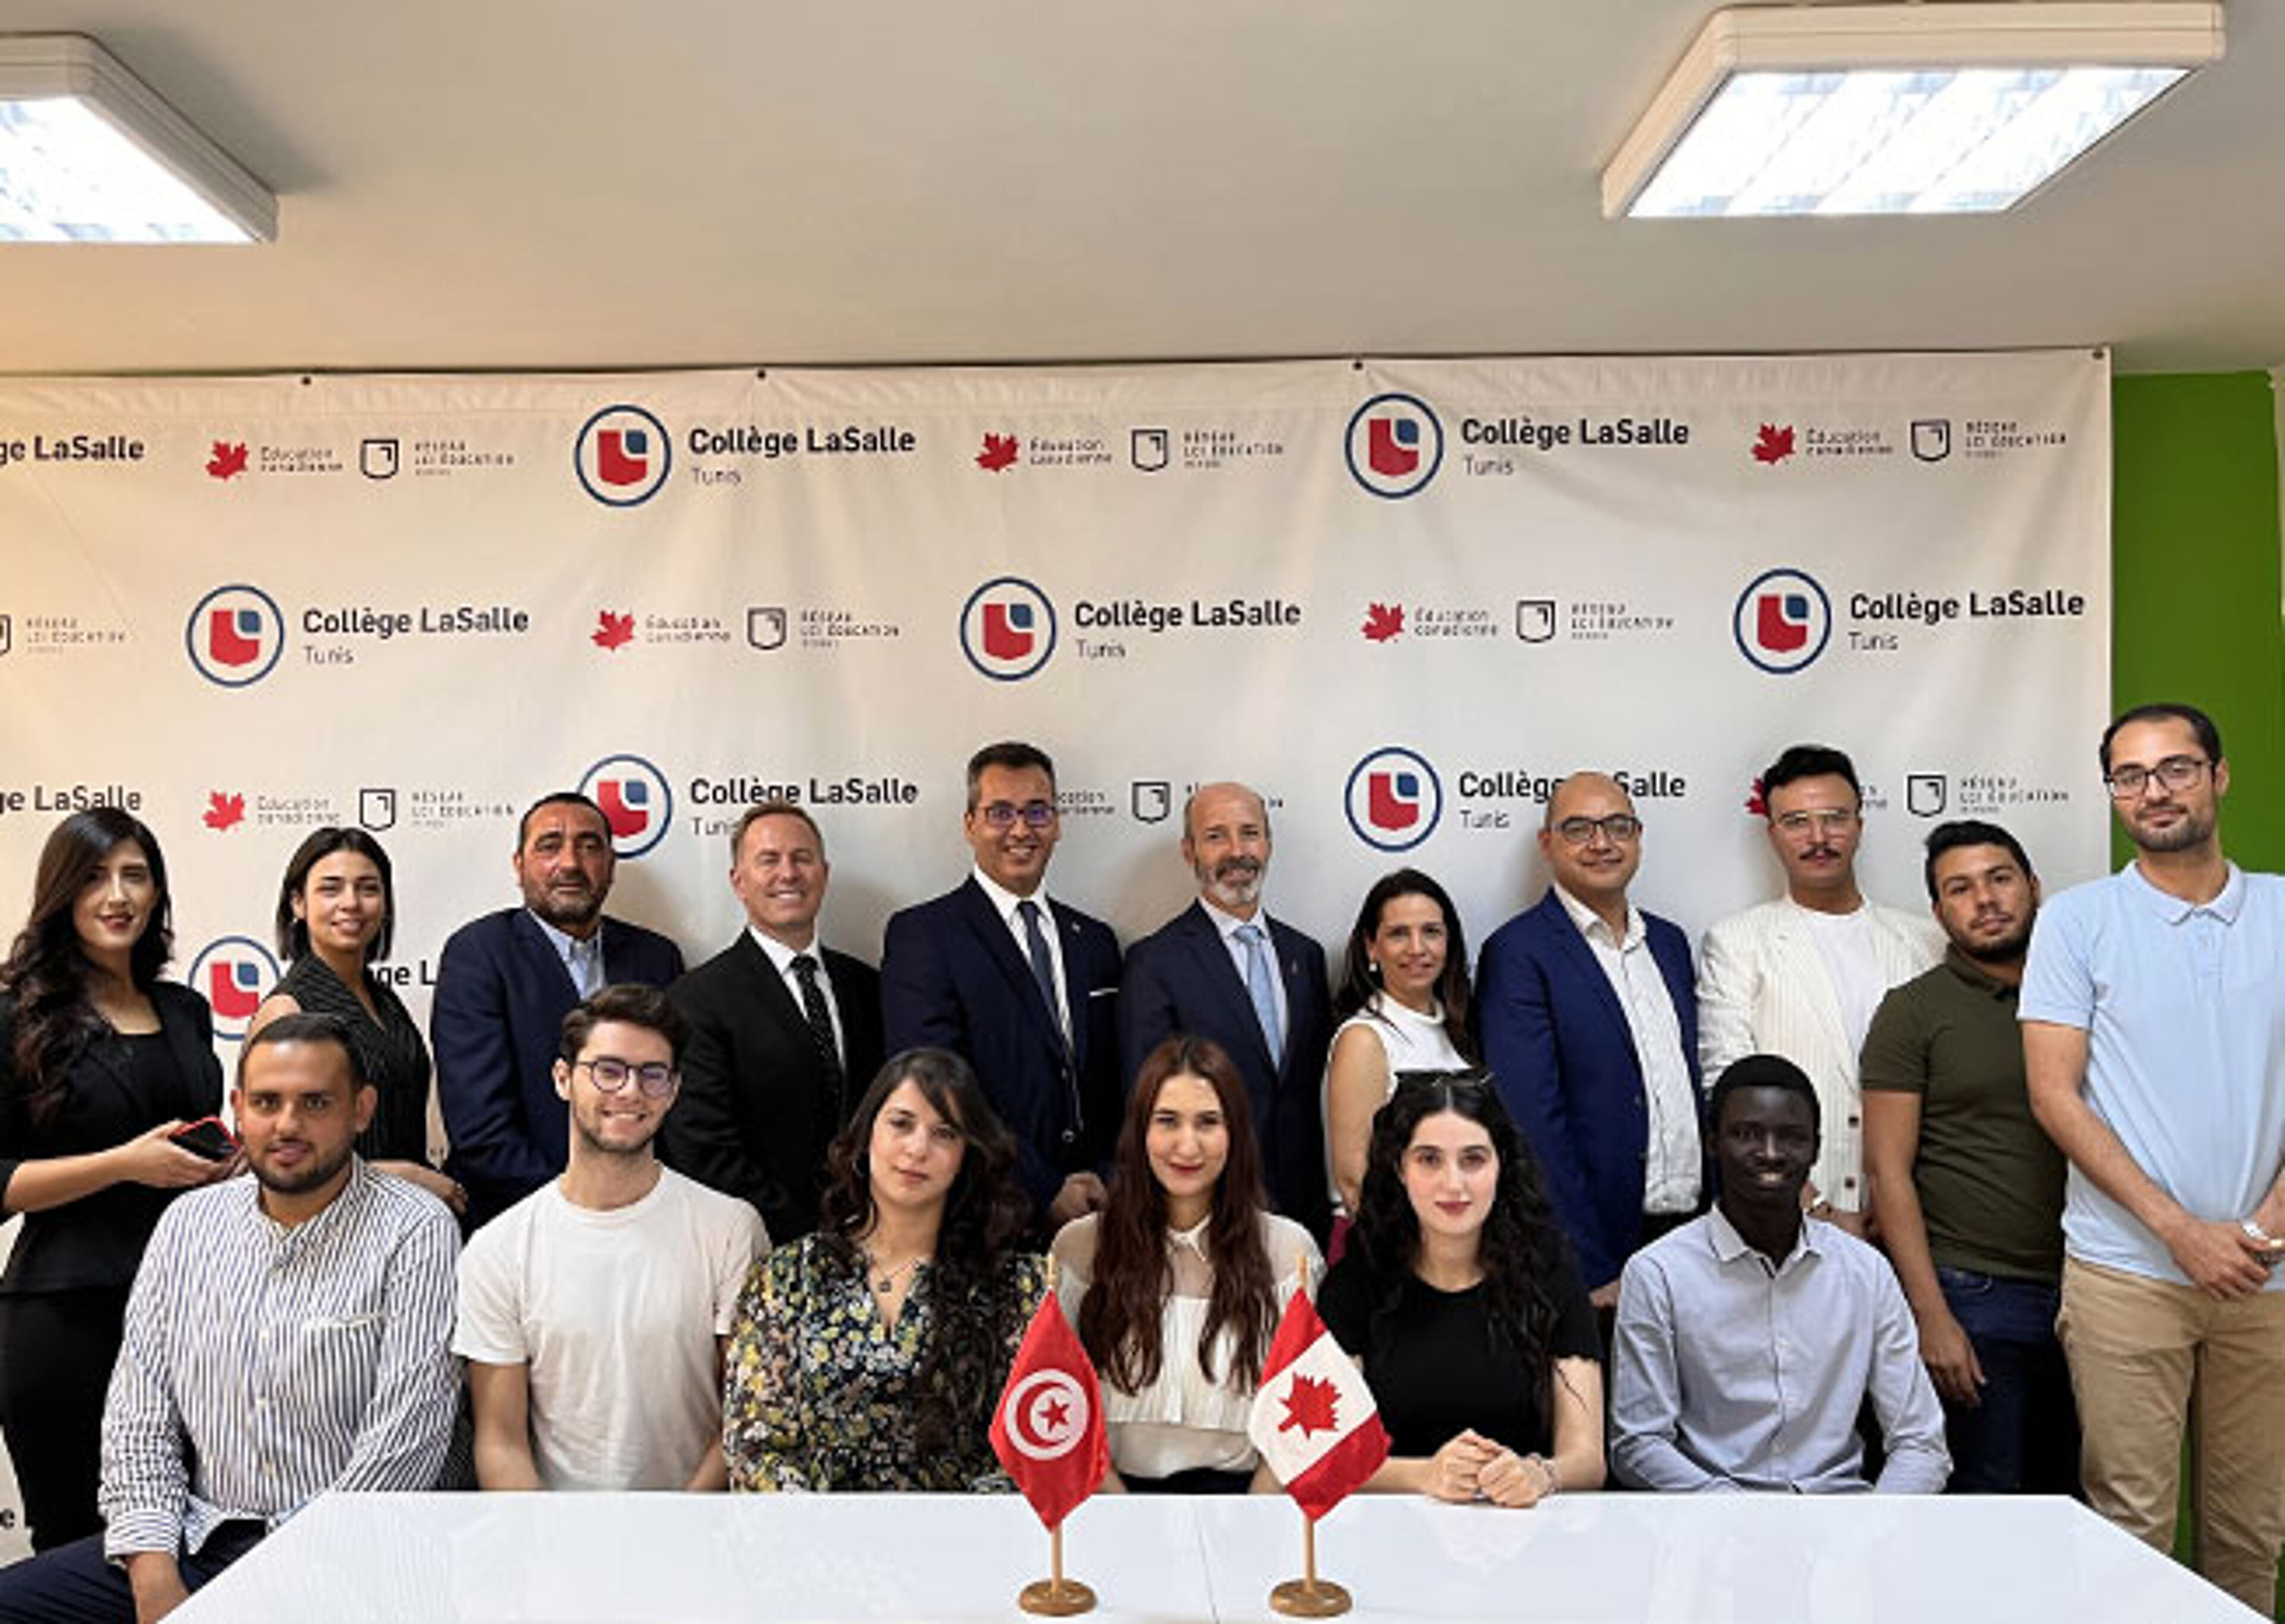 Un groupe diversifié se réunit pour une photo commémorative au Collège LaSalle de Tunis, avec des drapeaux tunisiens et canadiens sur la table, symbolisant un partenariat.